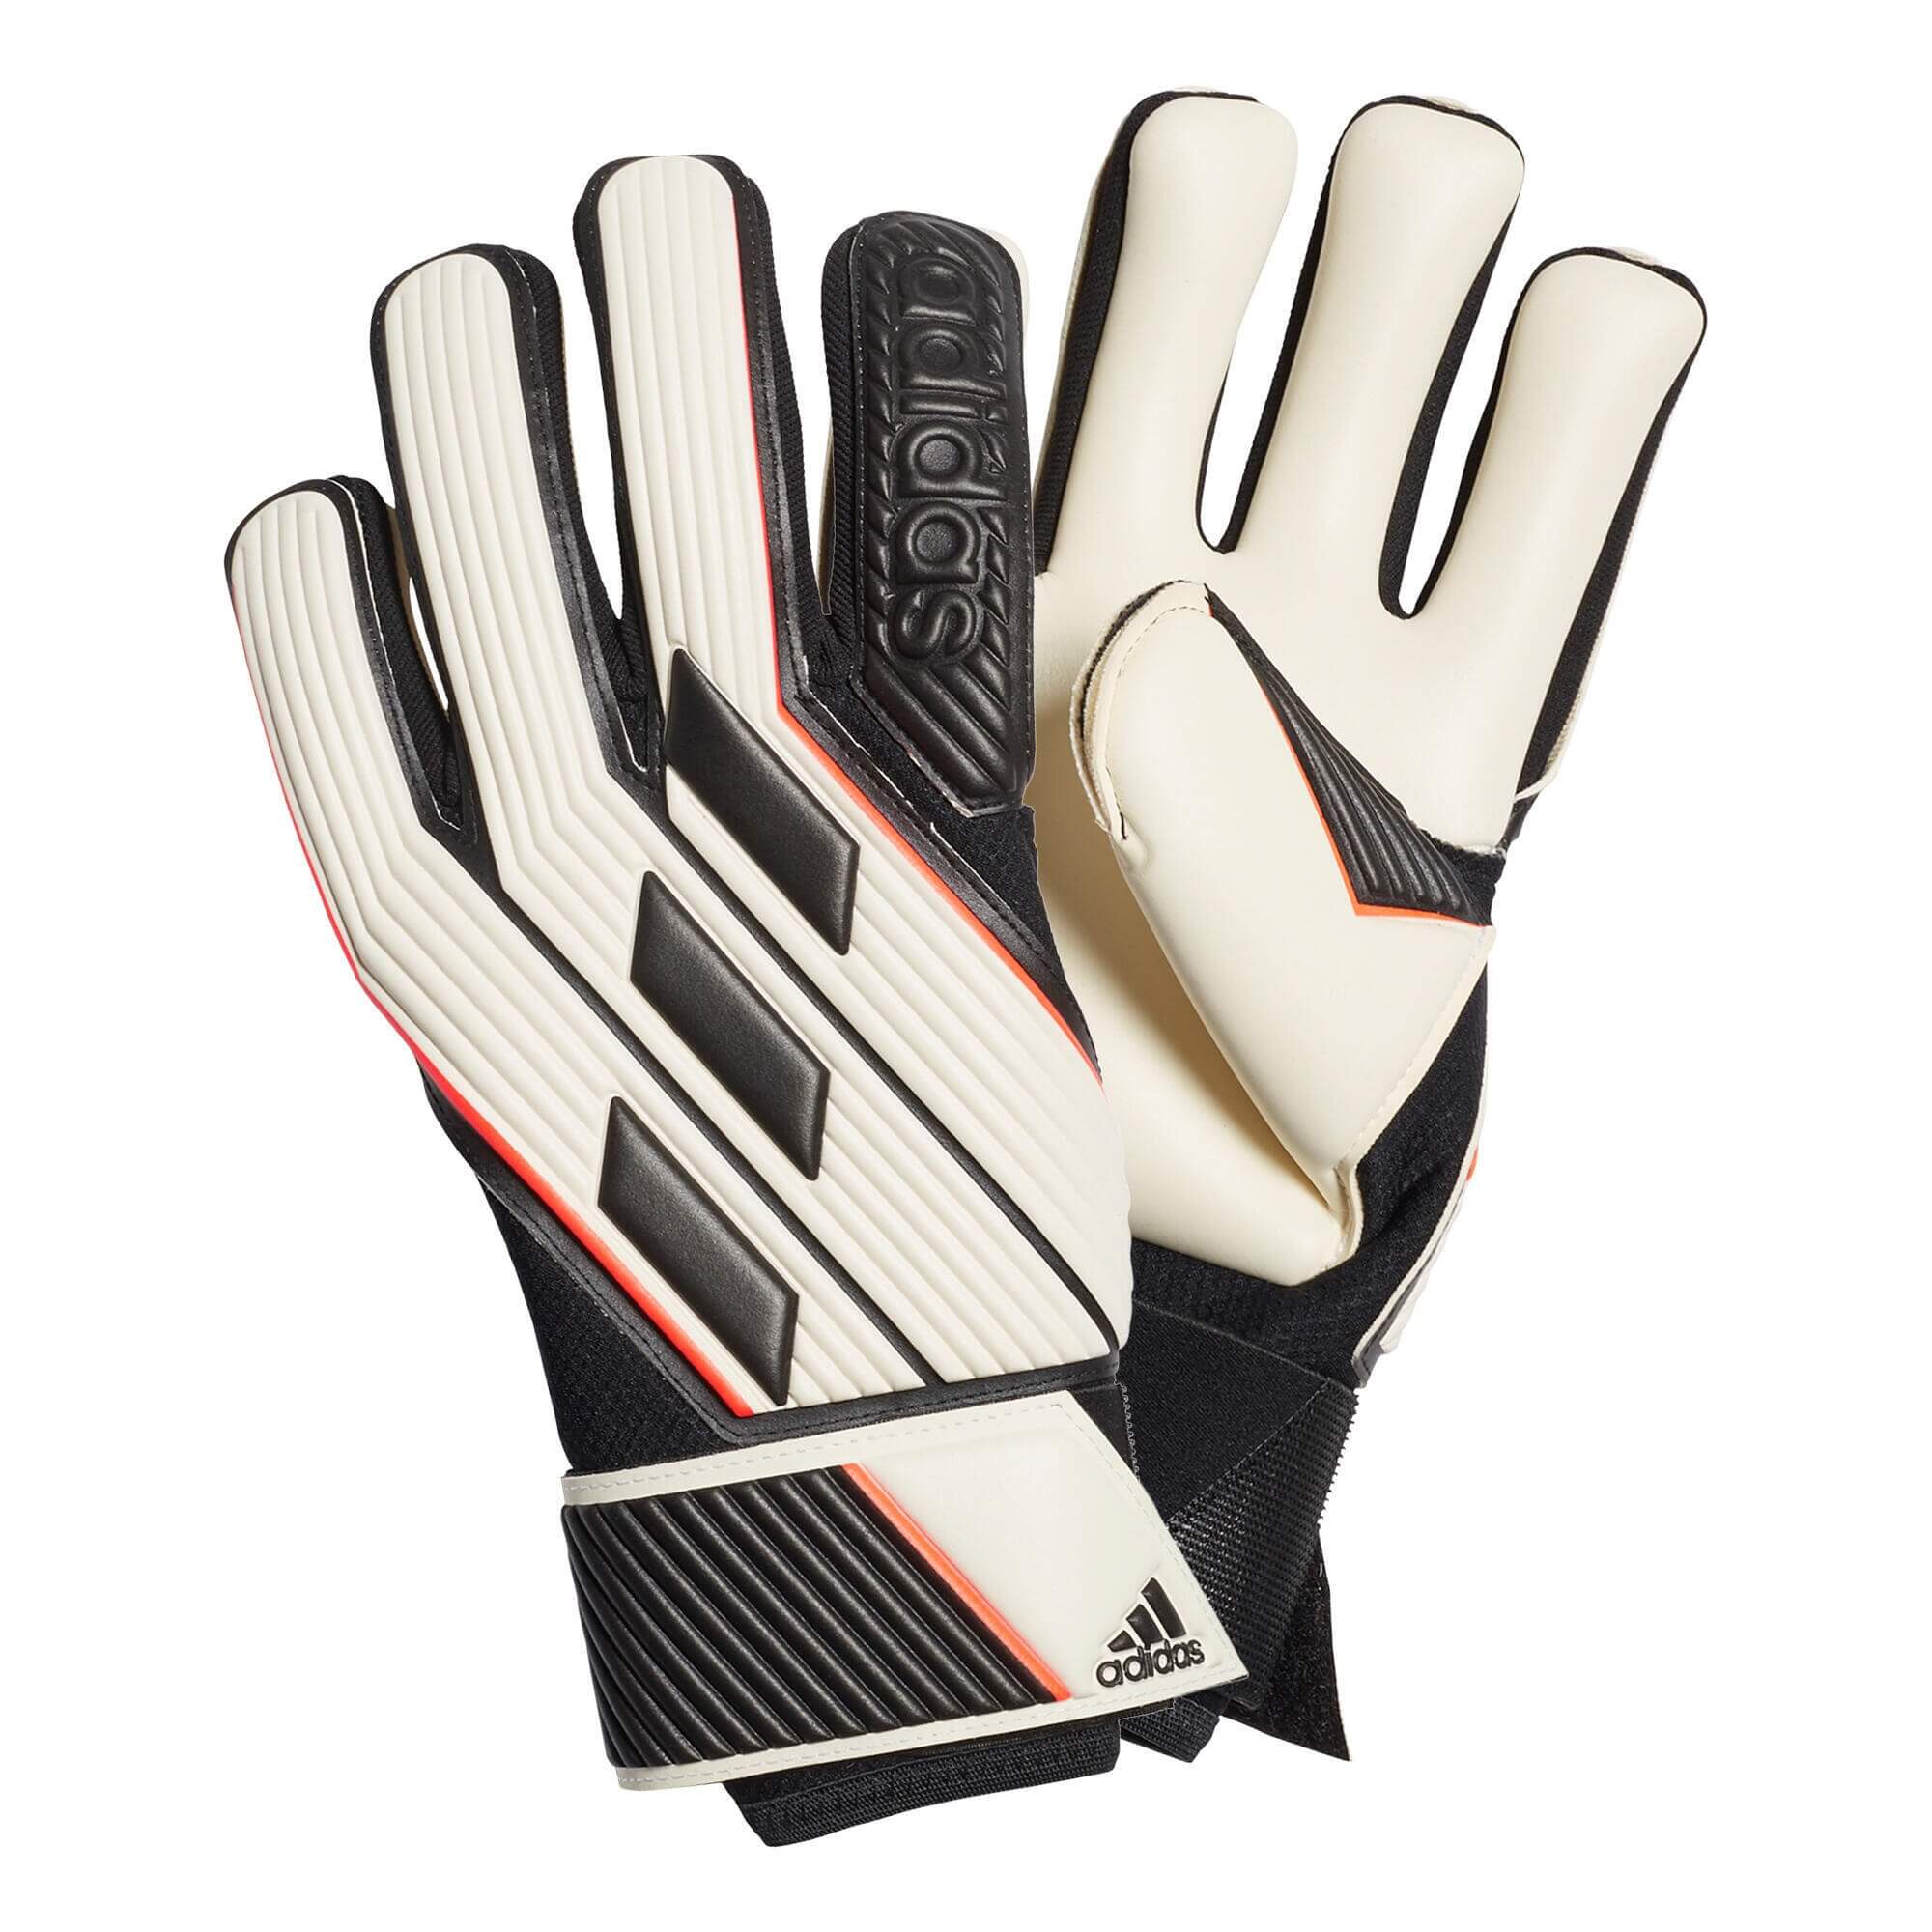 Вратарские перчатки Adidas Tiro Glove Pro, белый/черный перчатки вратарские adidas tiro gl pro gi6380 р р 8 белый